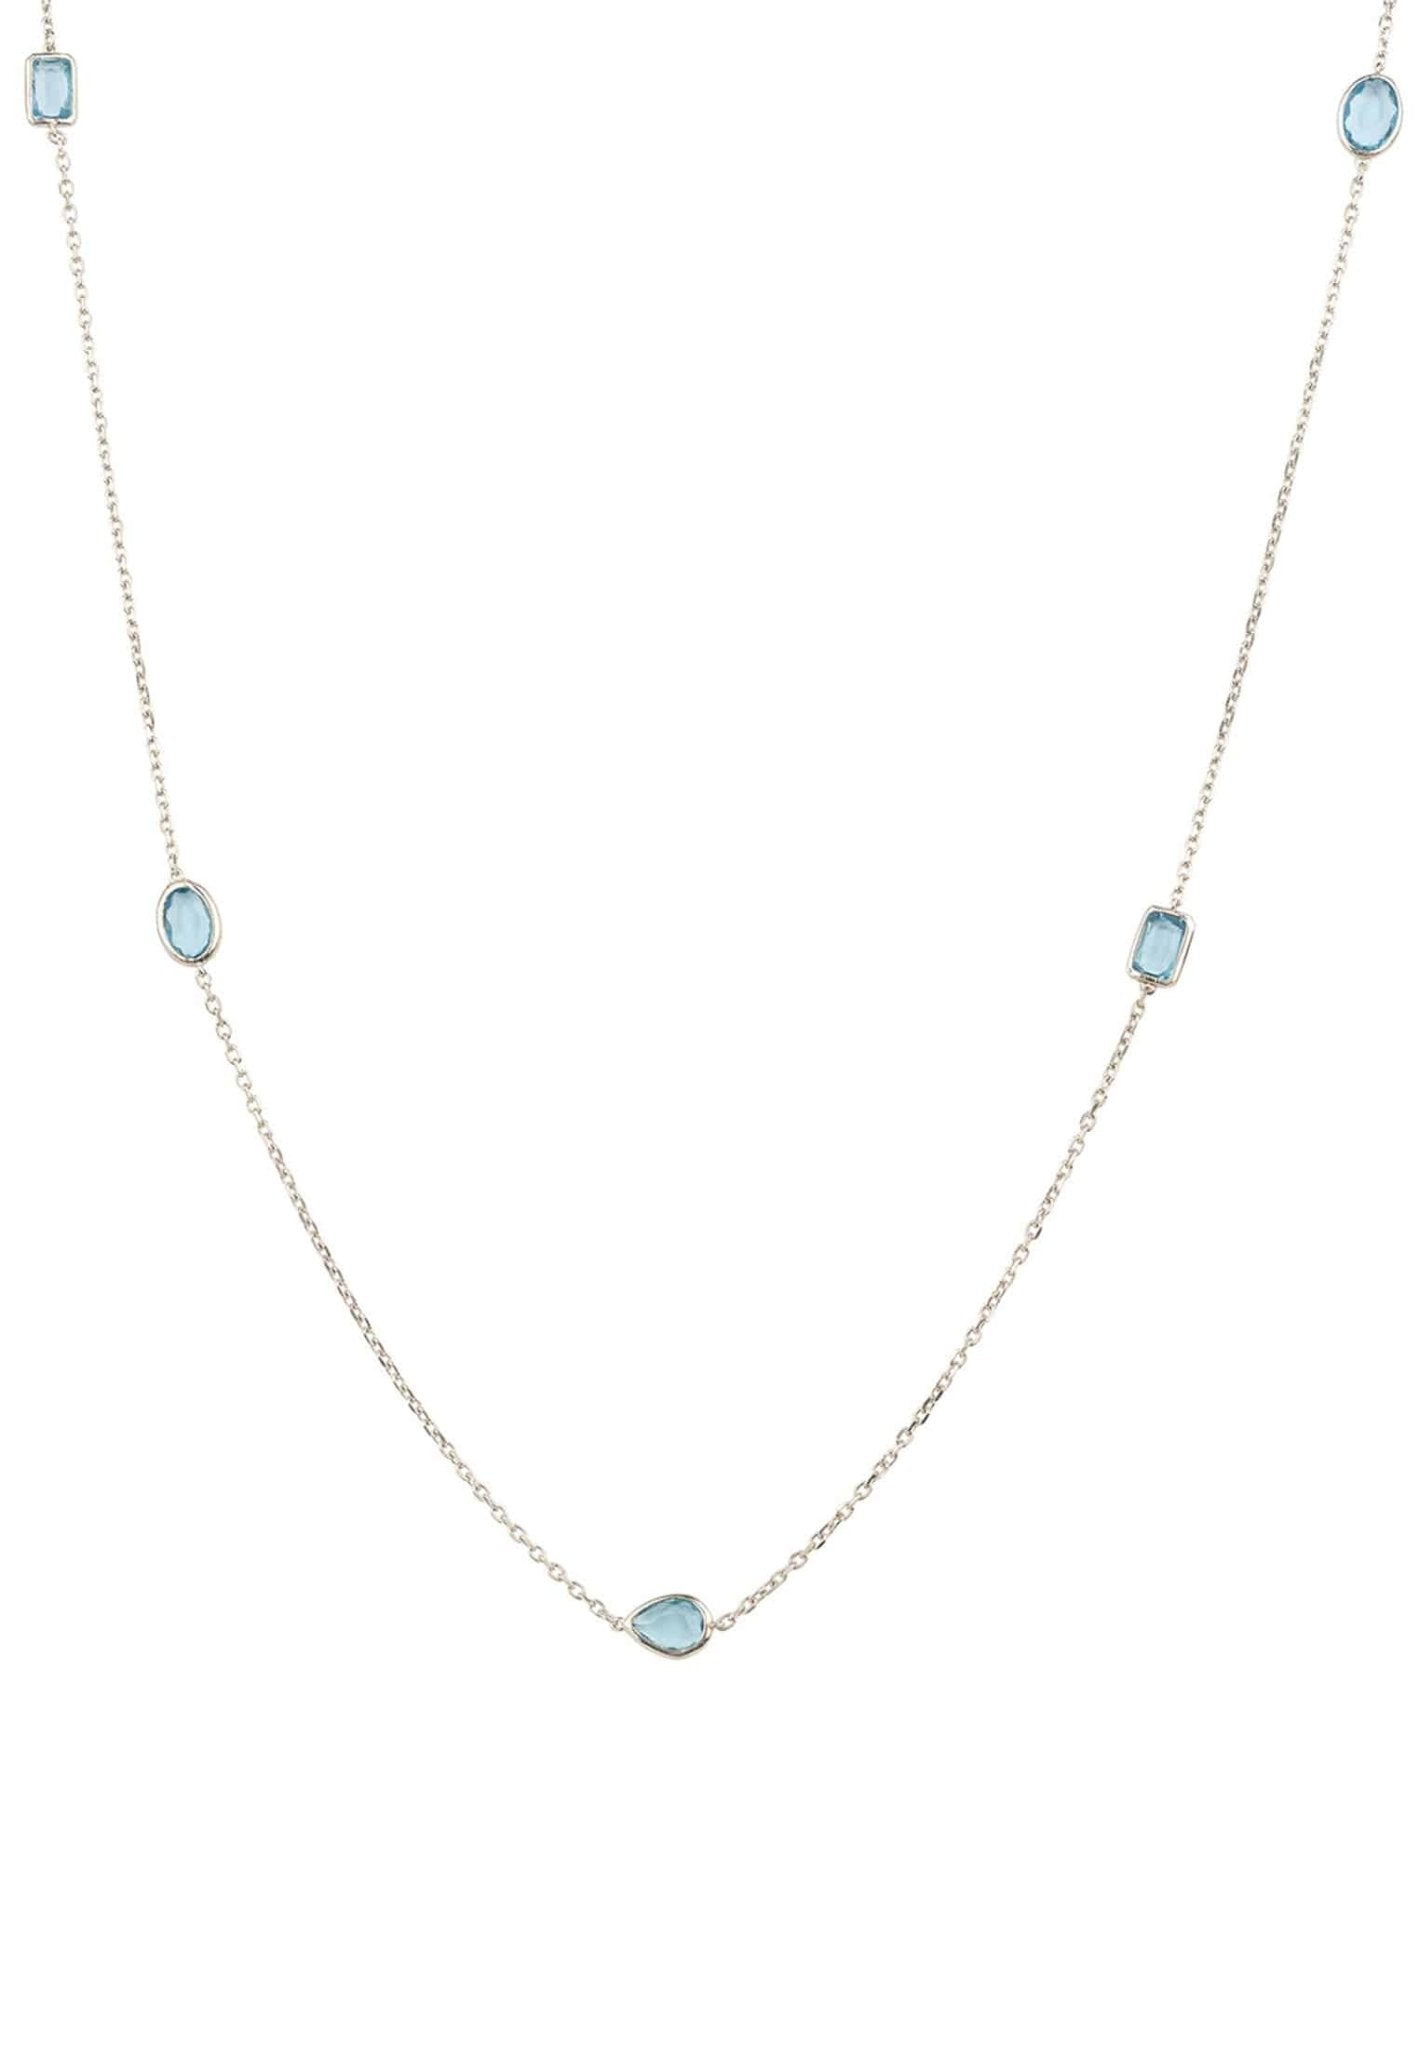 Venice 120Cm Long Chain Necklace Silver Blue Topaz - LATELITA Necklaces